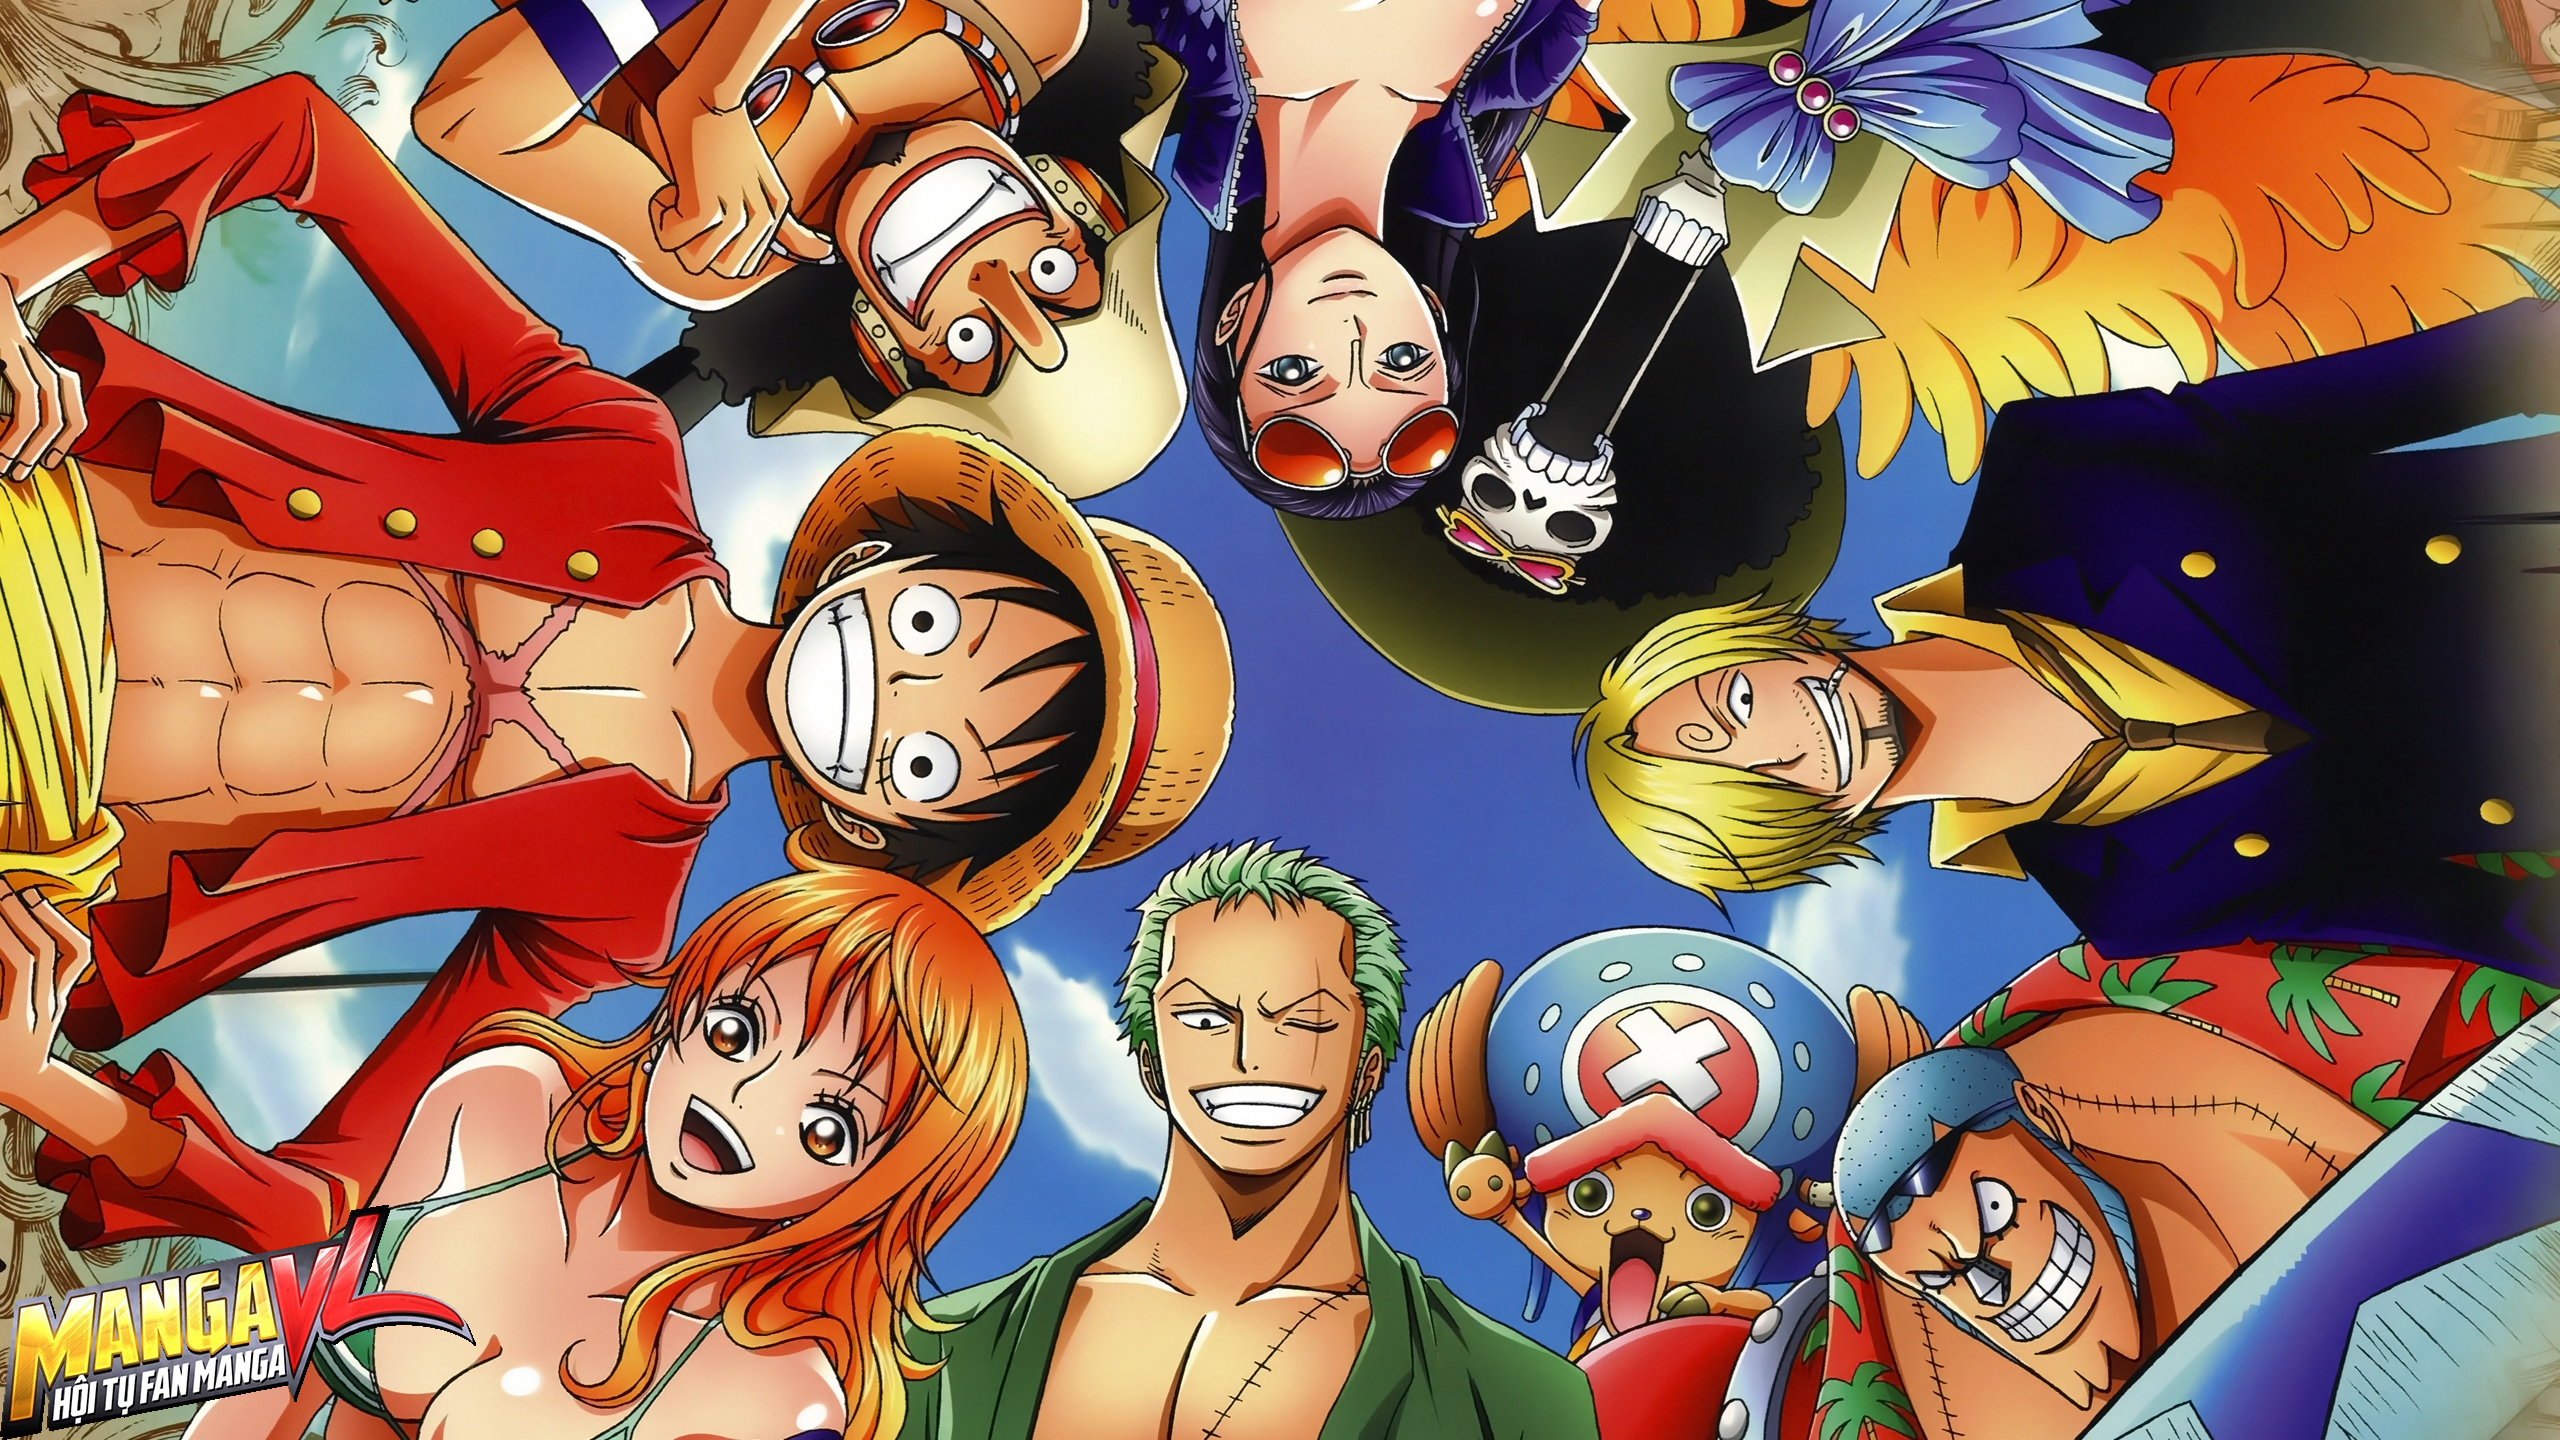 Những nhân vật nữ trong bộ anime/manga One Piece luôn được thiết kế vô cùng xinh đẹp và quyến rũ. Nếu bạn là fan của One Piece, hãy ghé ngay trang web của chúng tôi để thưởng thức những hình ảnh đẹp và quyến rũ nhất về các nhân vật nữ trong bộ manga/anime nổi tiếng này.